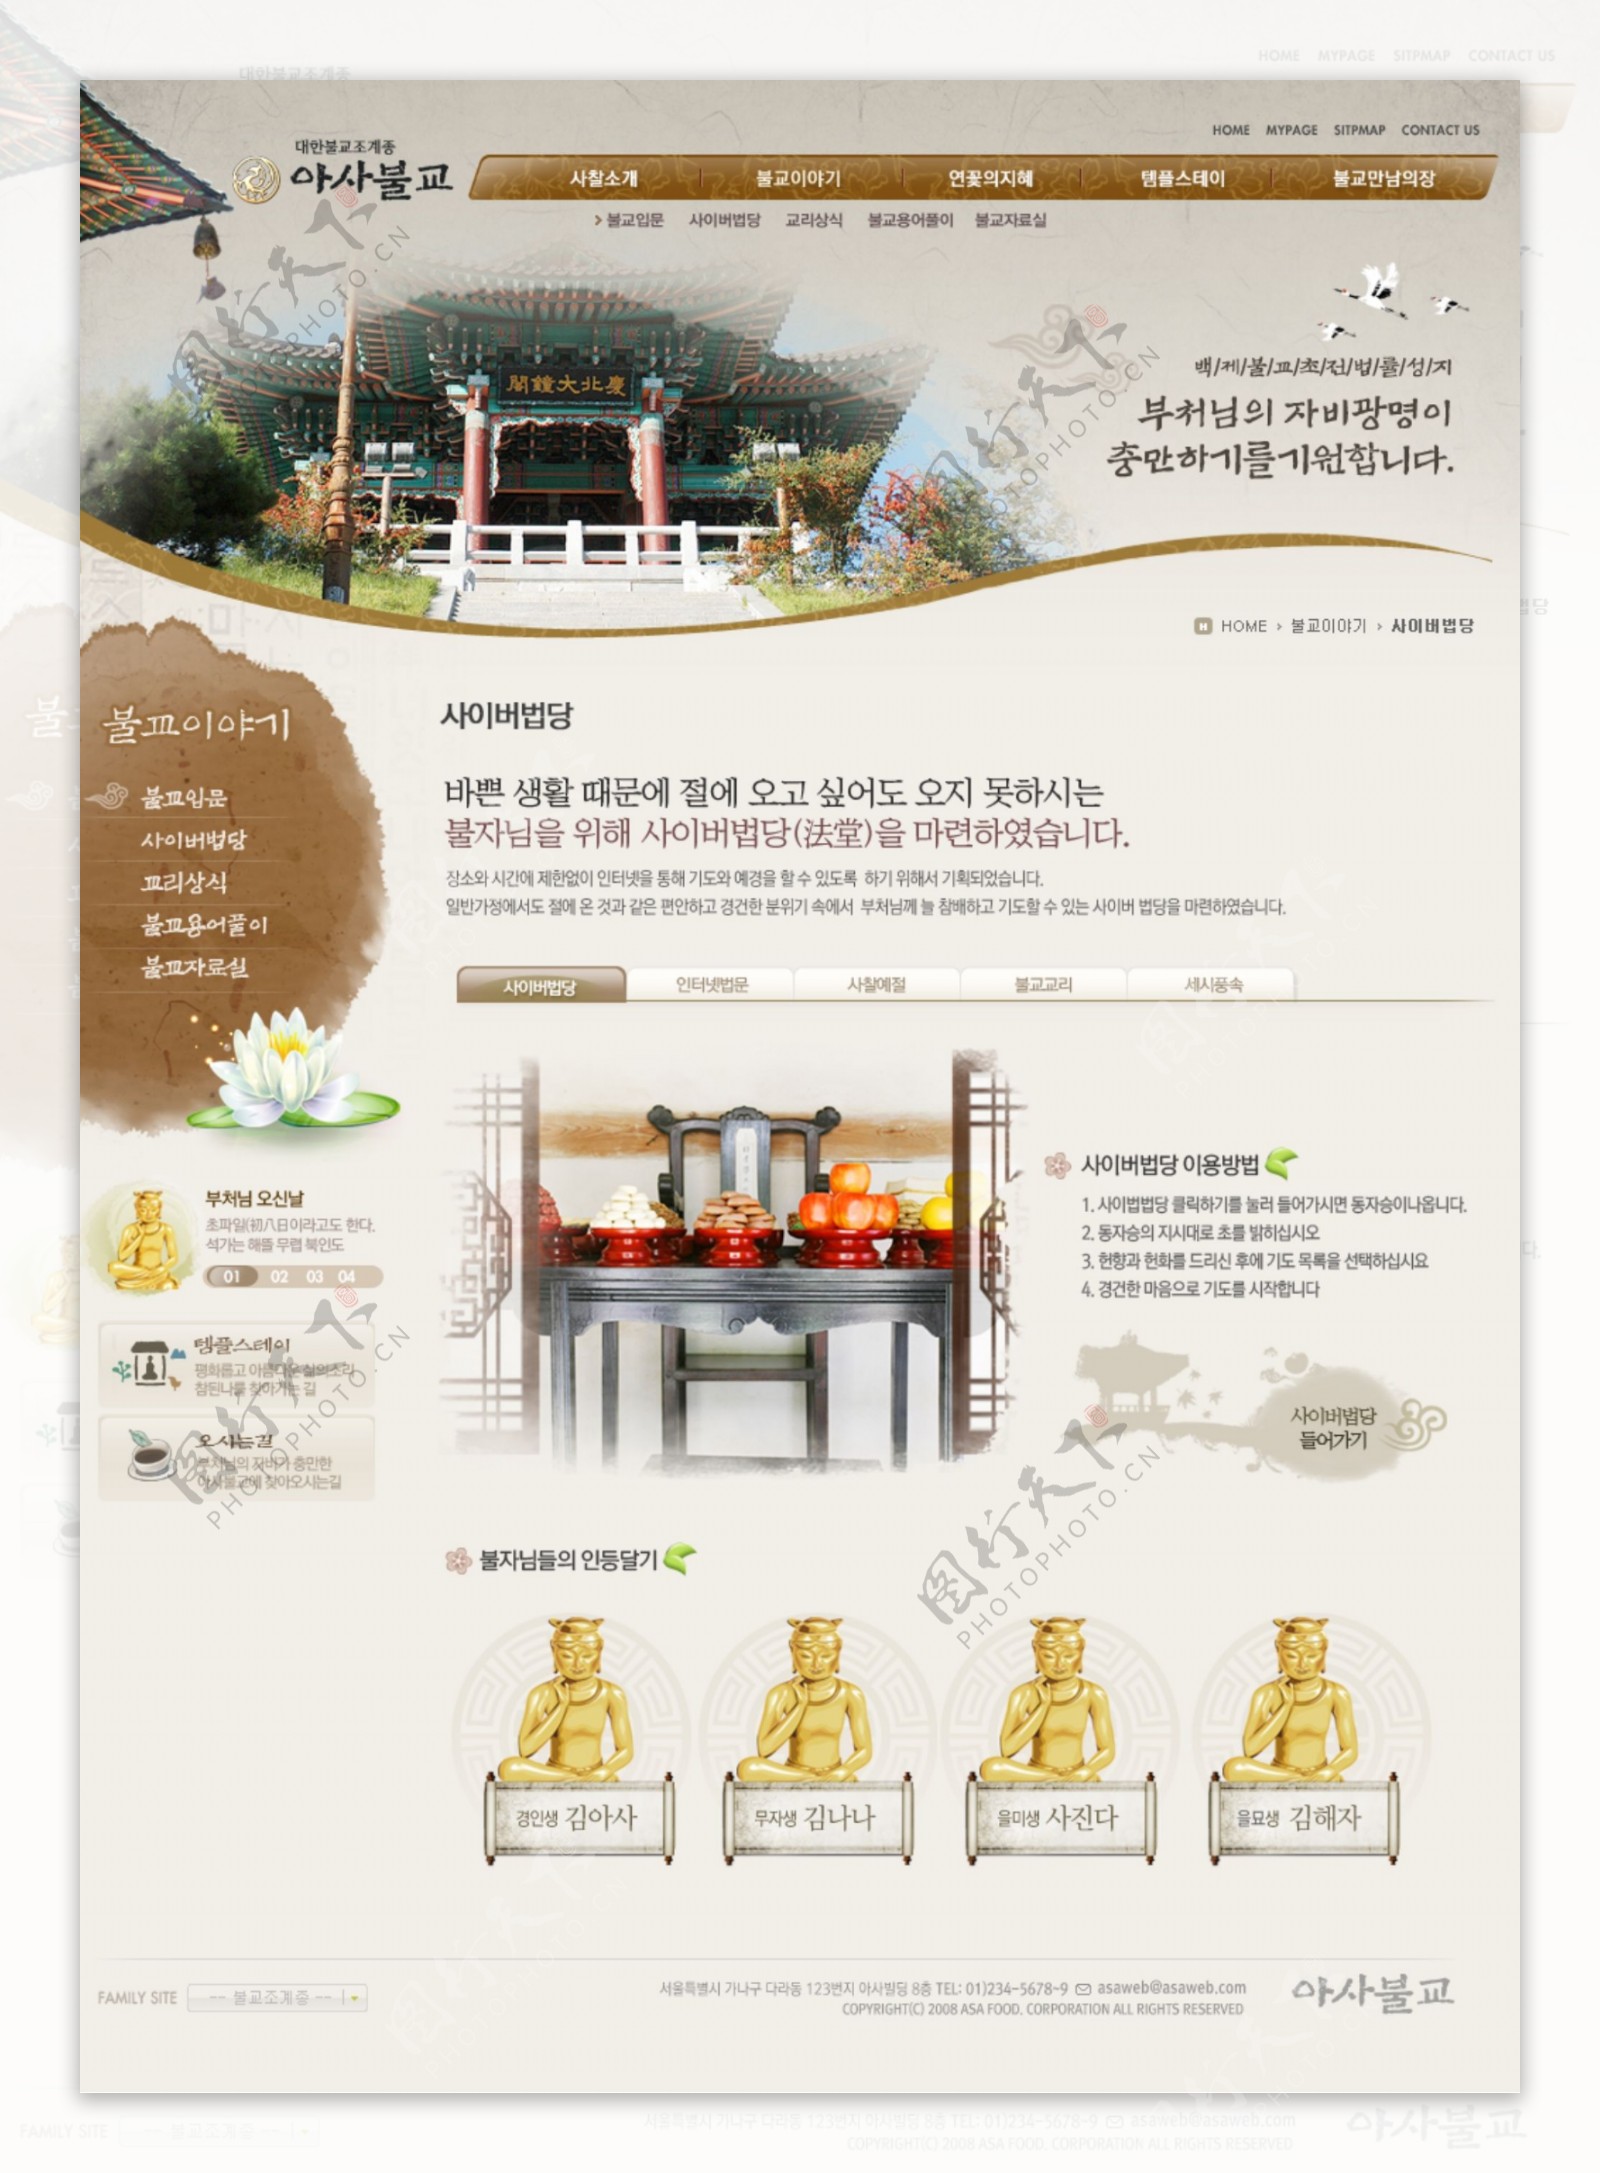 超漂亮韩国宗教网站模版大全包括子页面完整